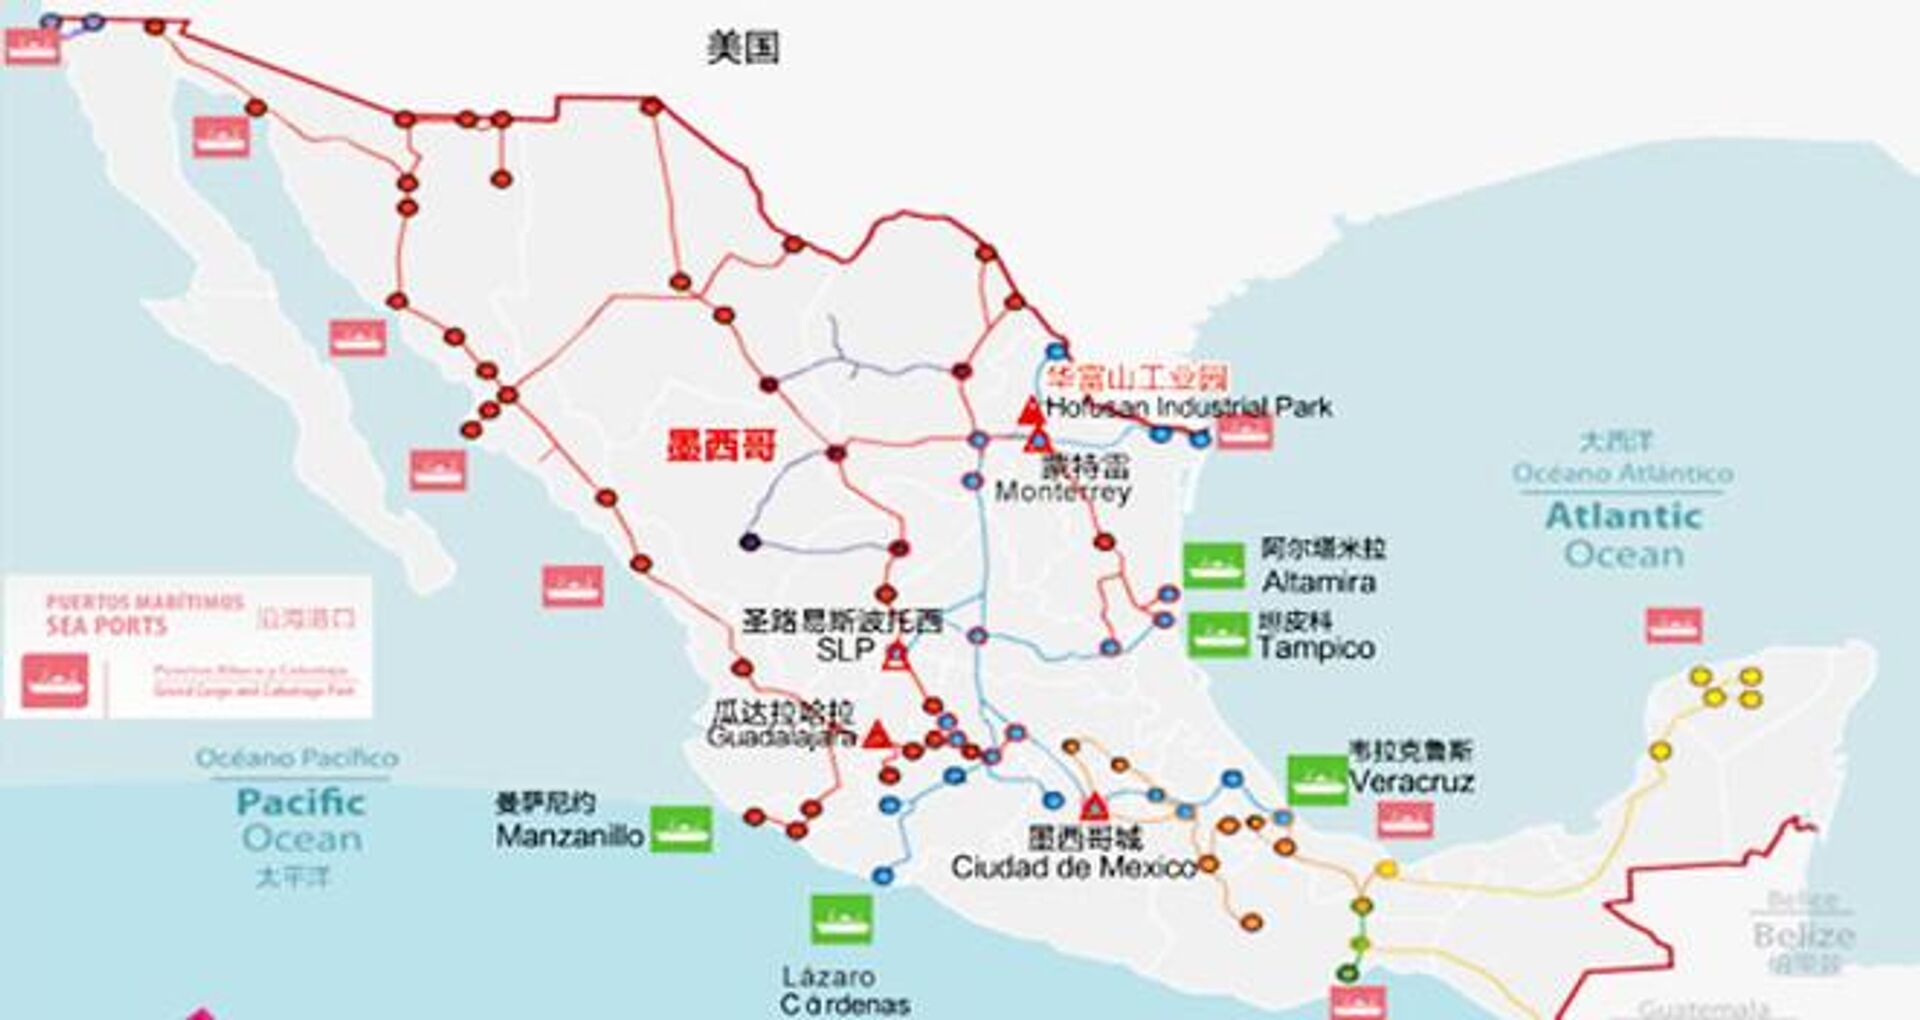 Mapa de infraestructura de México del Parque Industrial Hofusan, centro chino ubicado en la ciudad de Monterrey - Sputnik Mundo, 1920, 30.09.2022